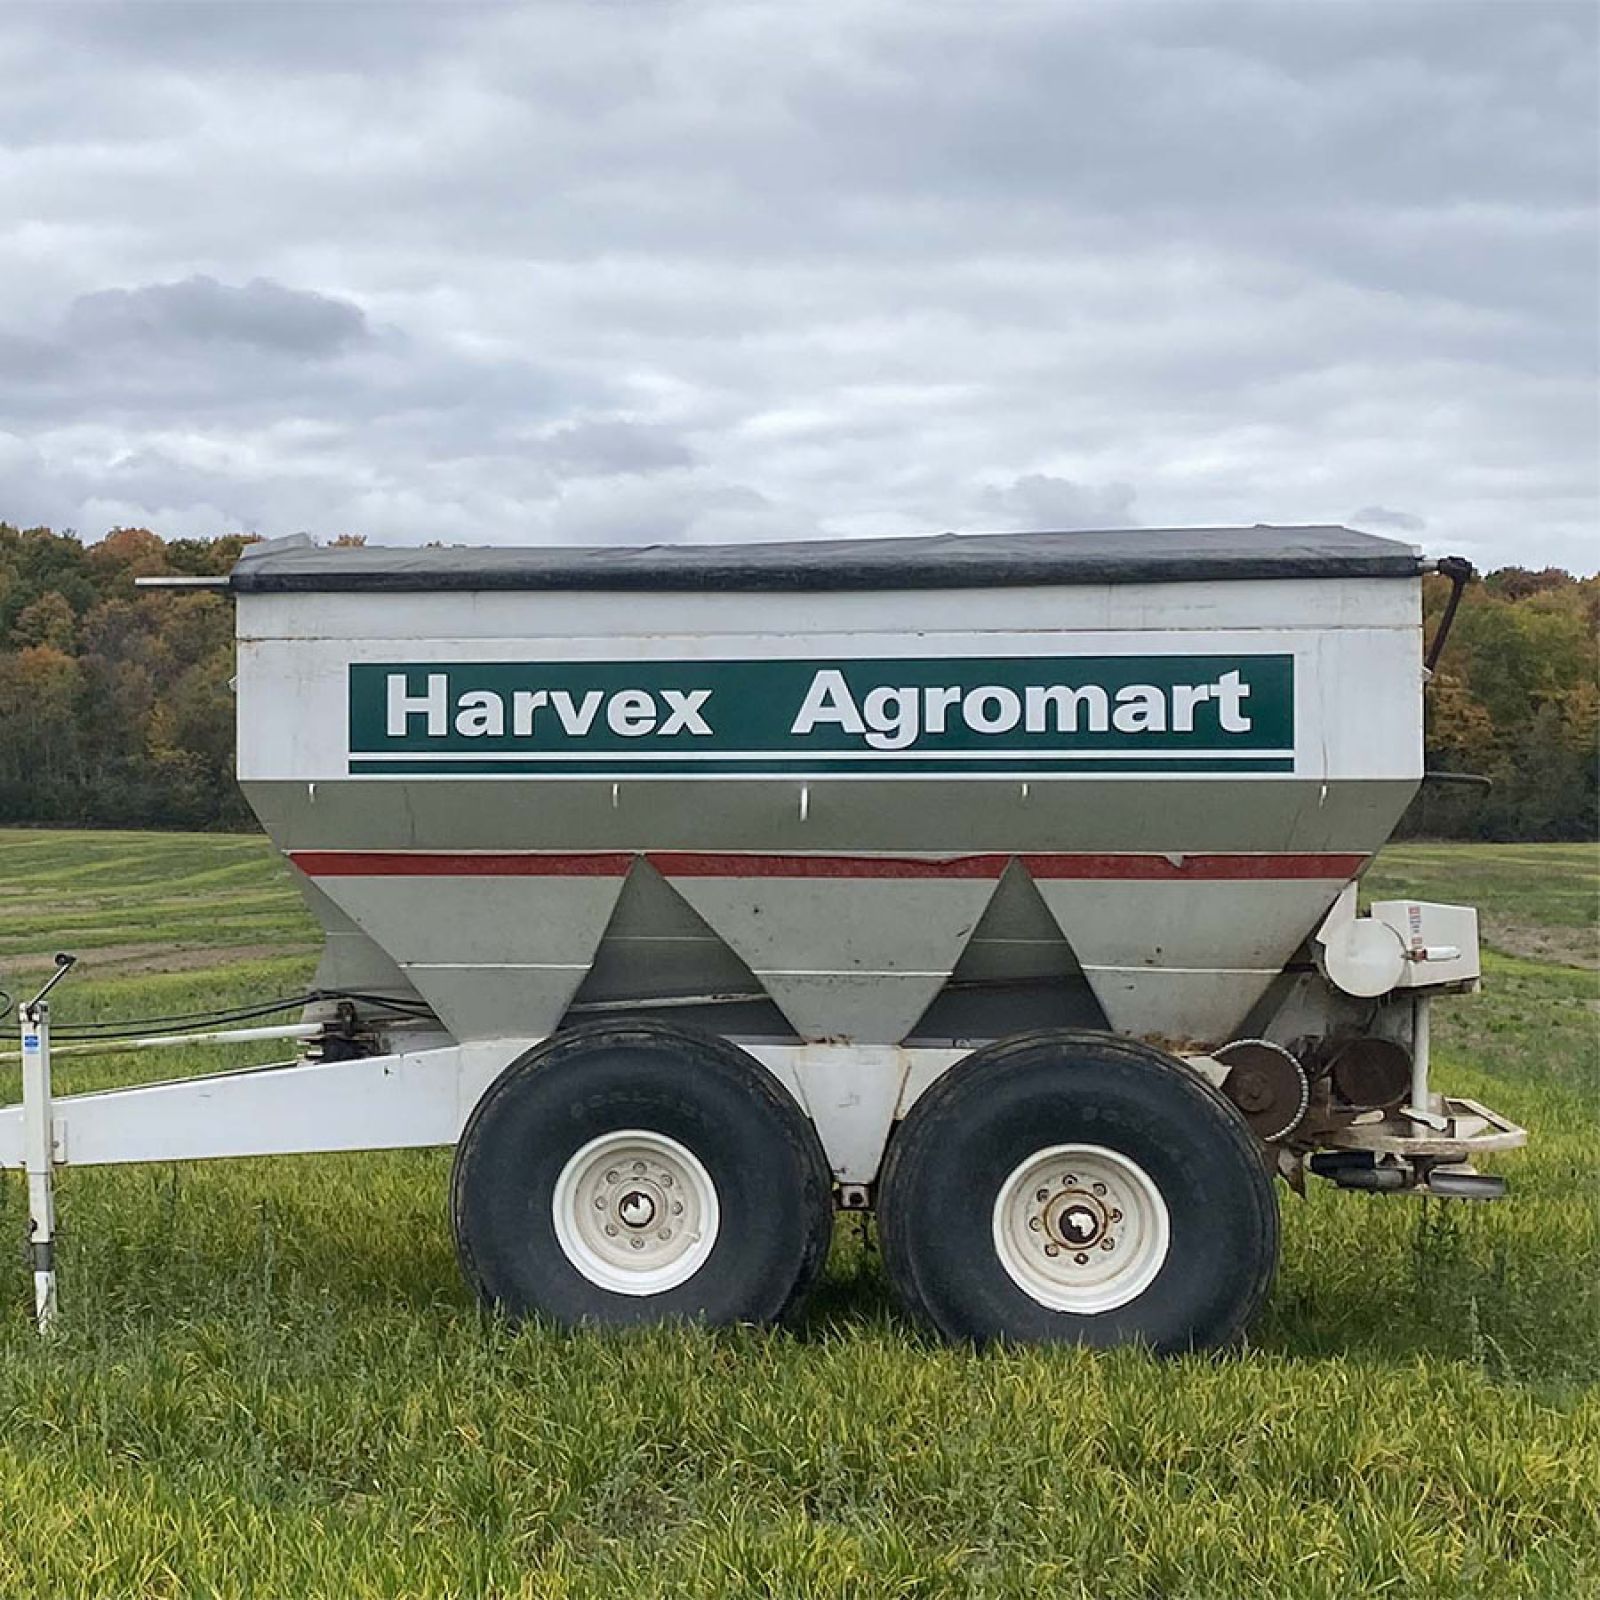 Harvex trailer sitting on cropland